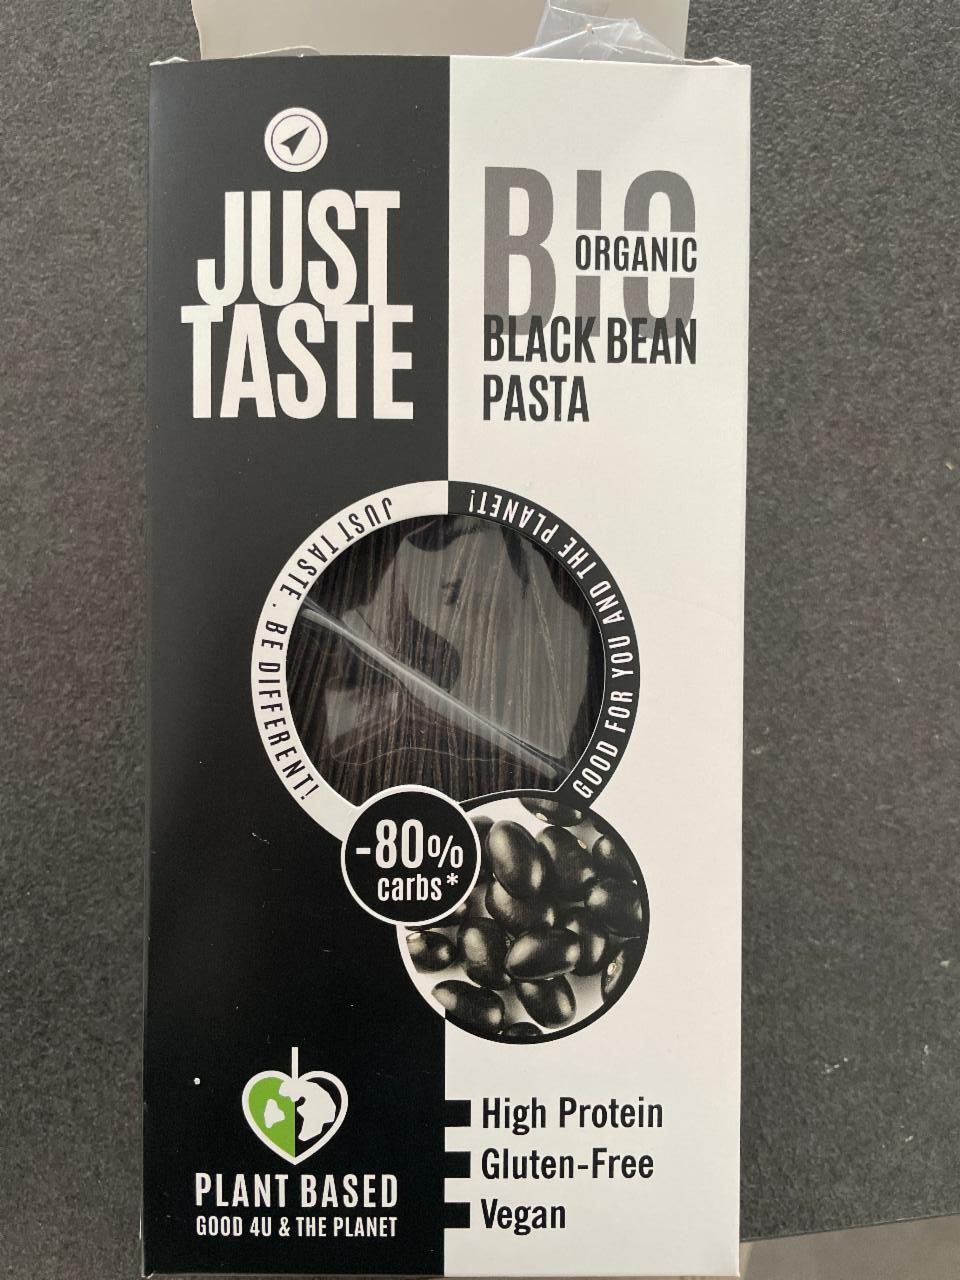 Fotografie - Black Bean Pasta Bio Organic Just Taste